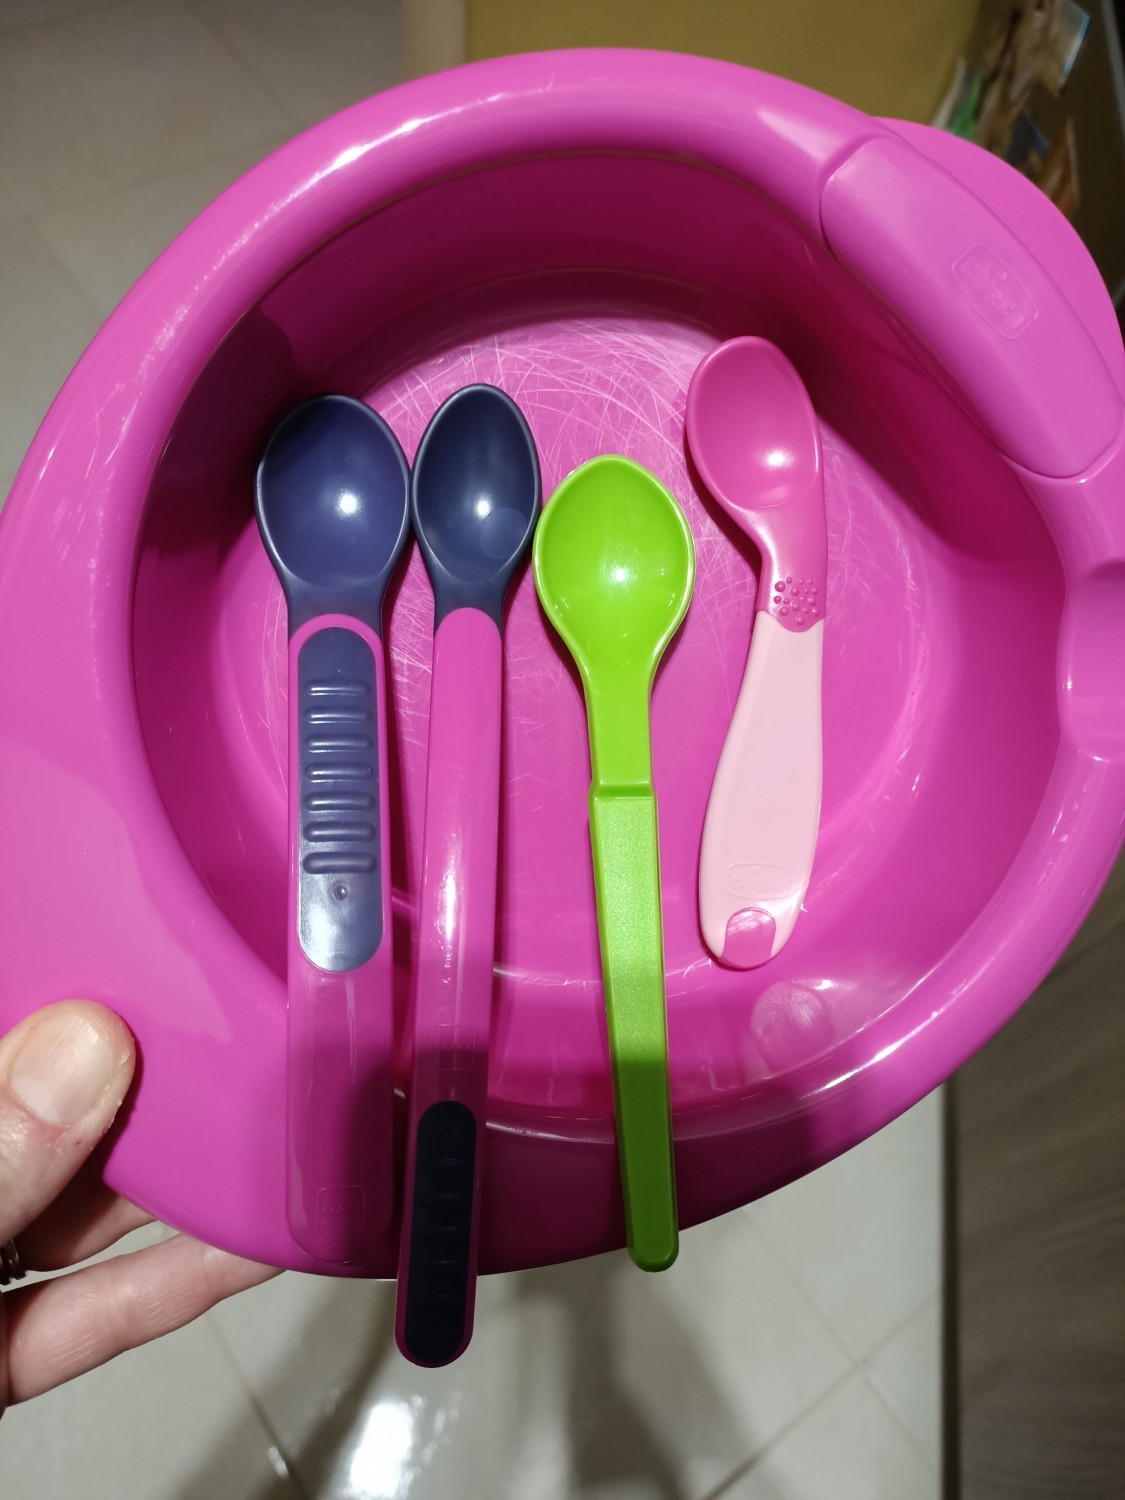 Comparazione cucchiaini